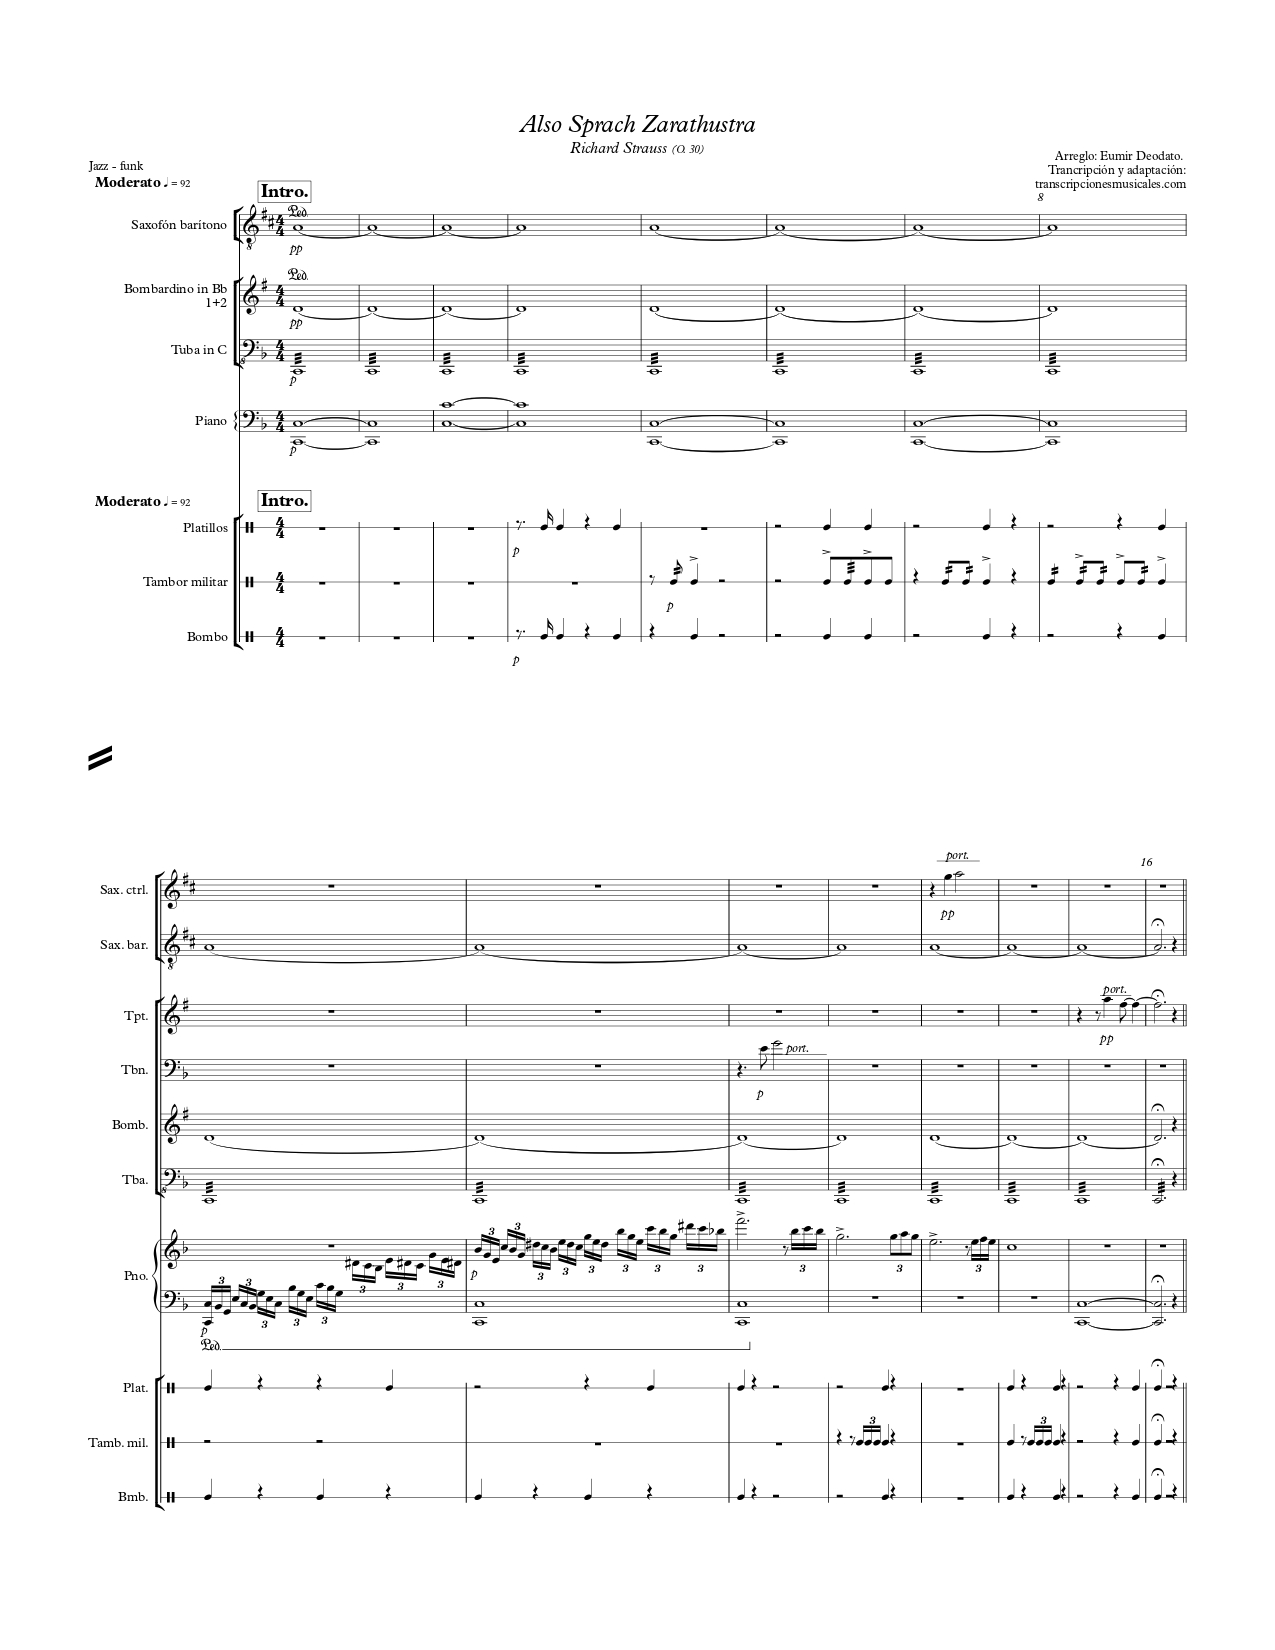 Also Sprach Zarathustra - sheet music page 1